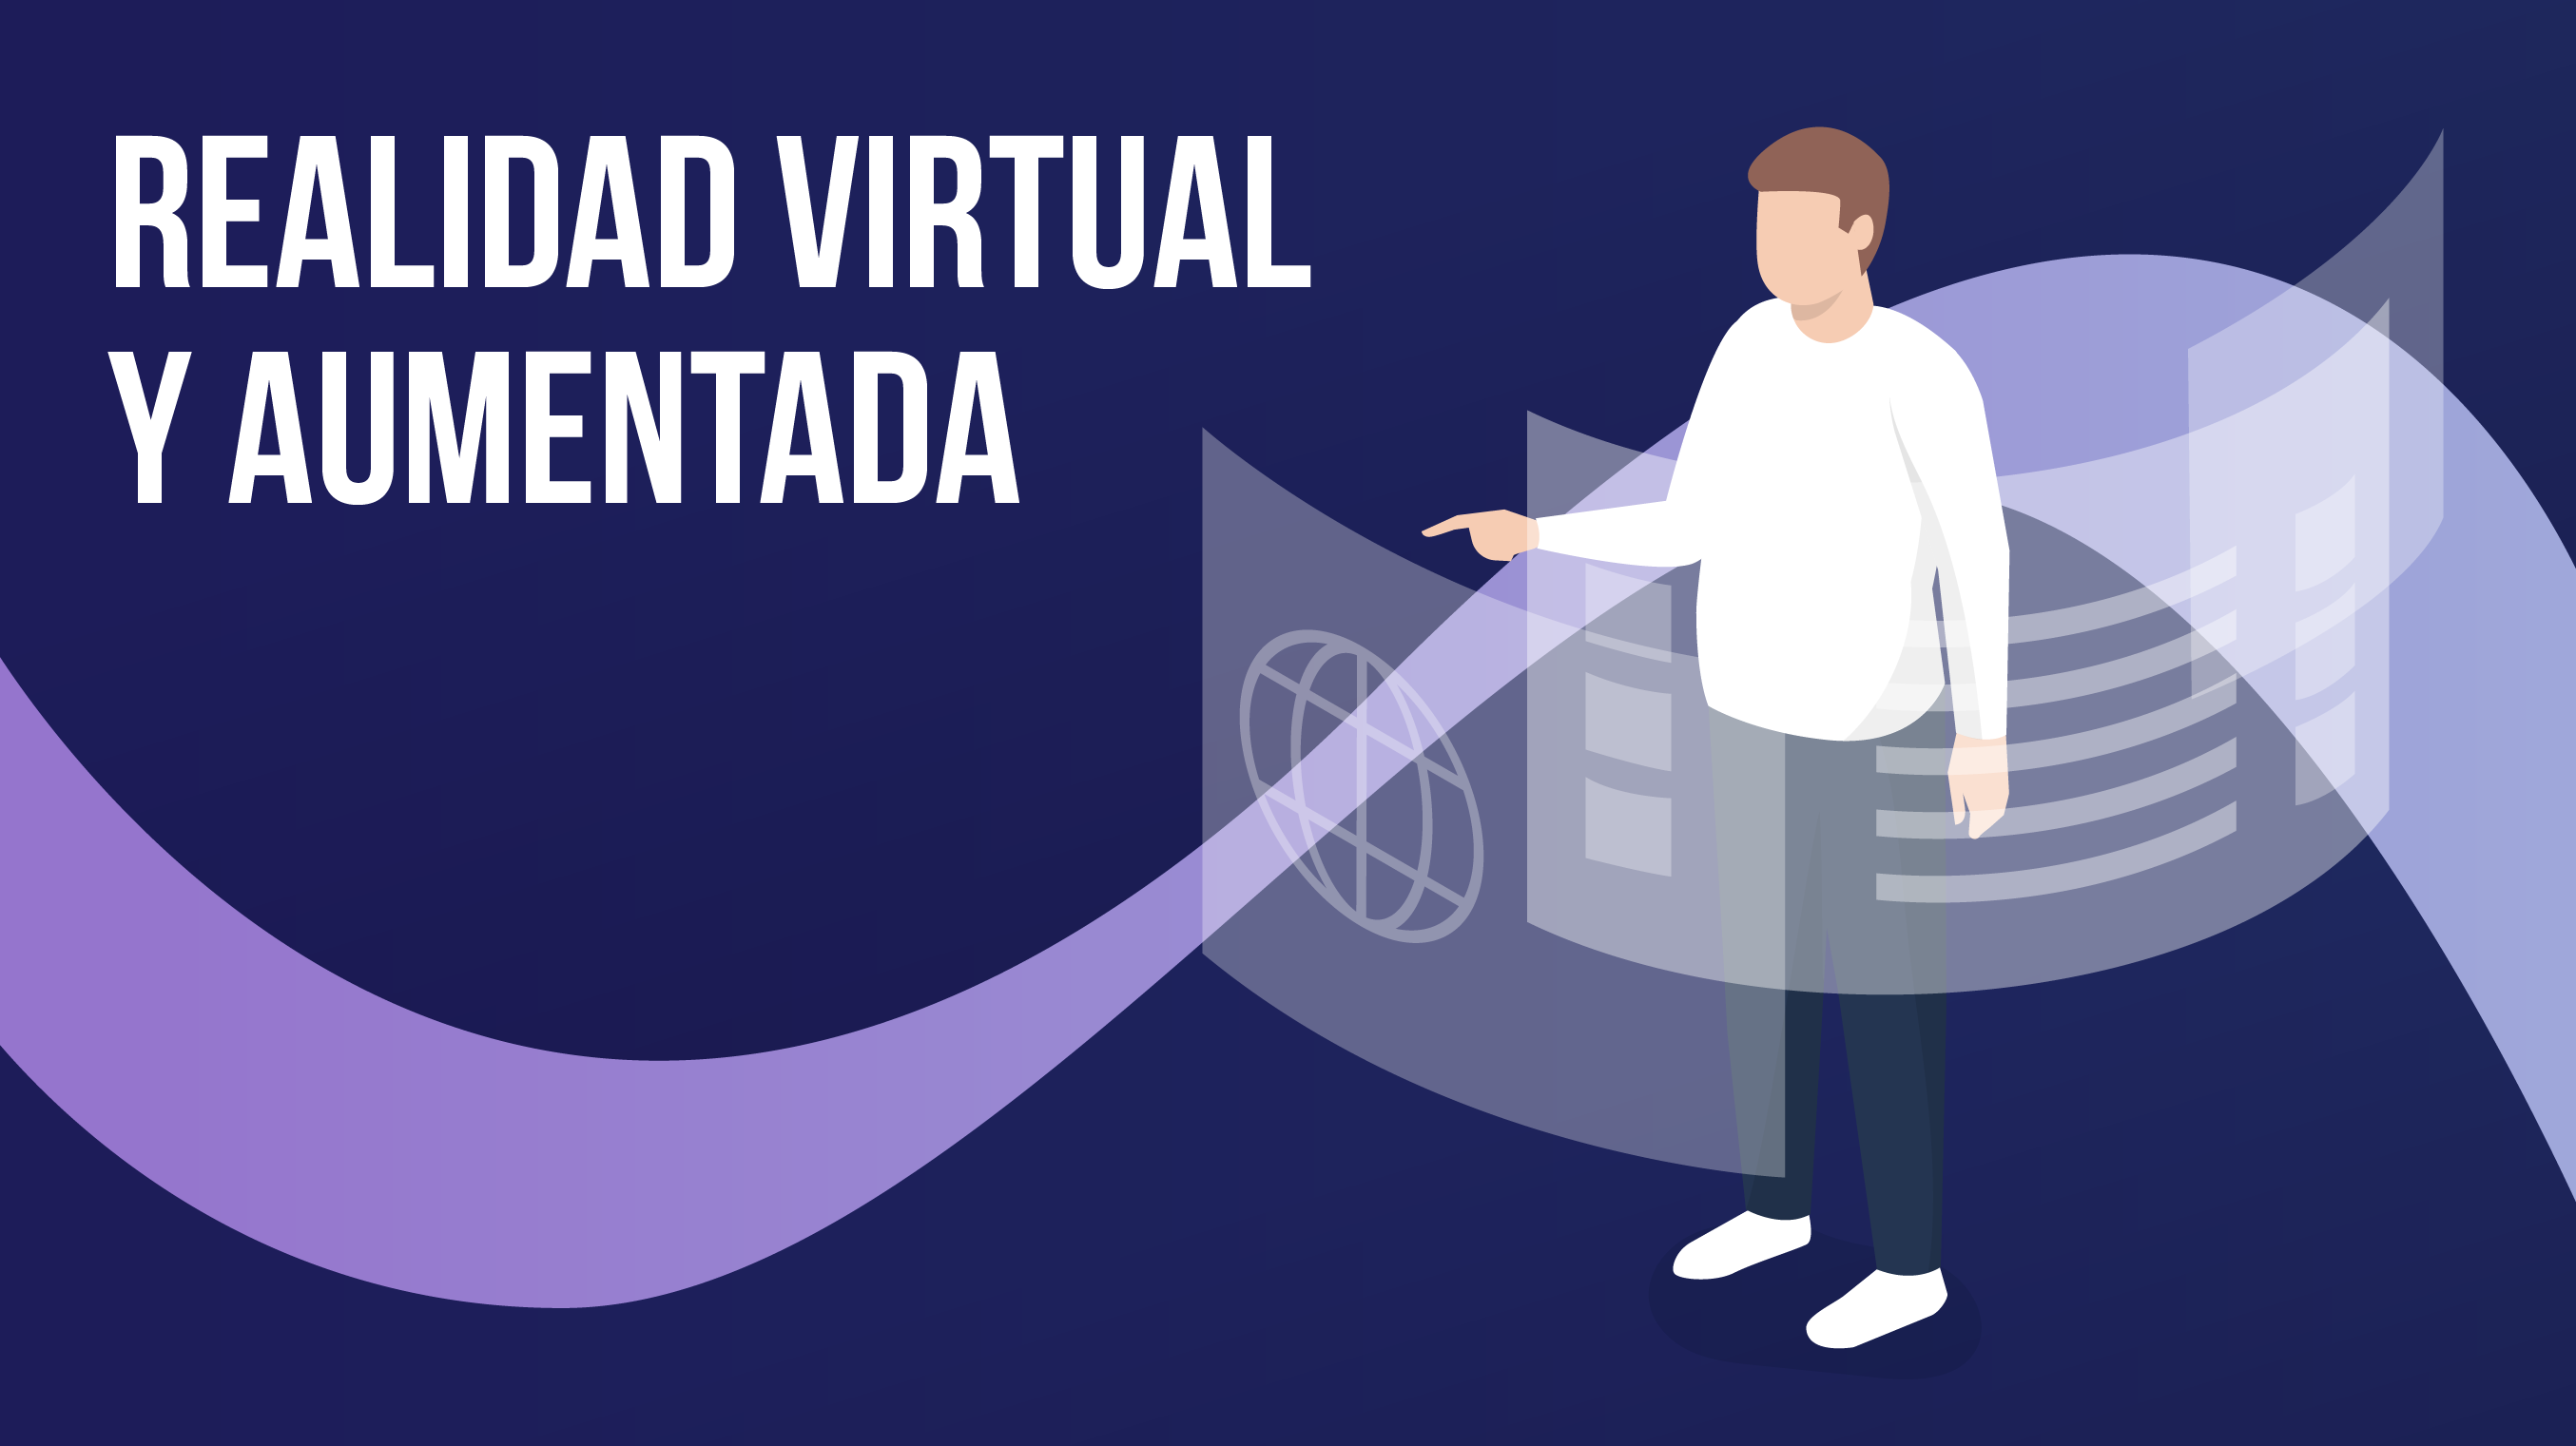 Realidad virtual y
aumentada